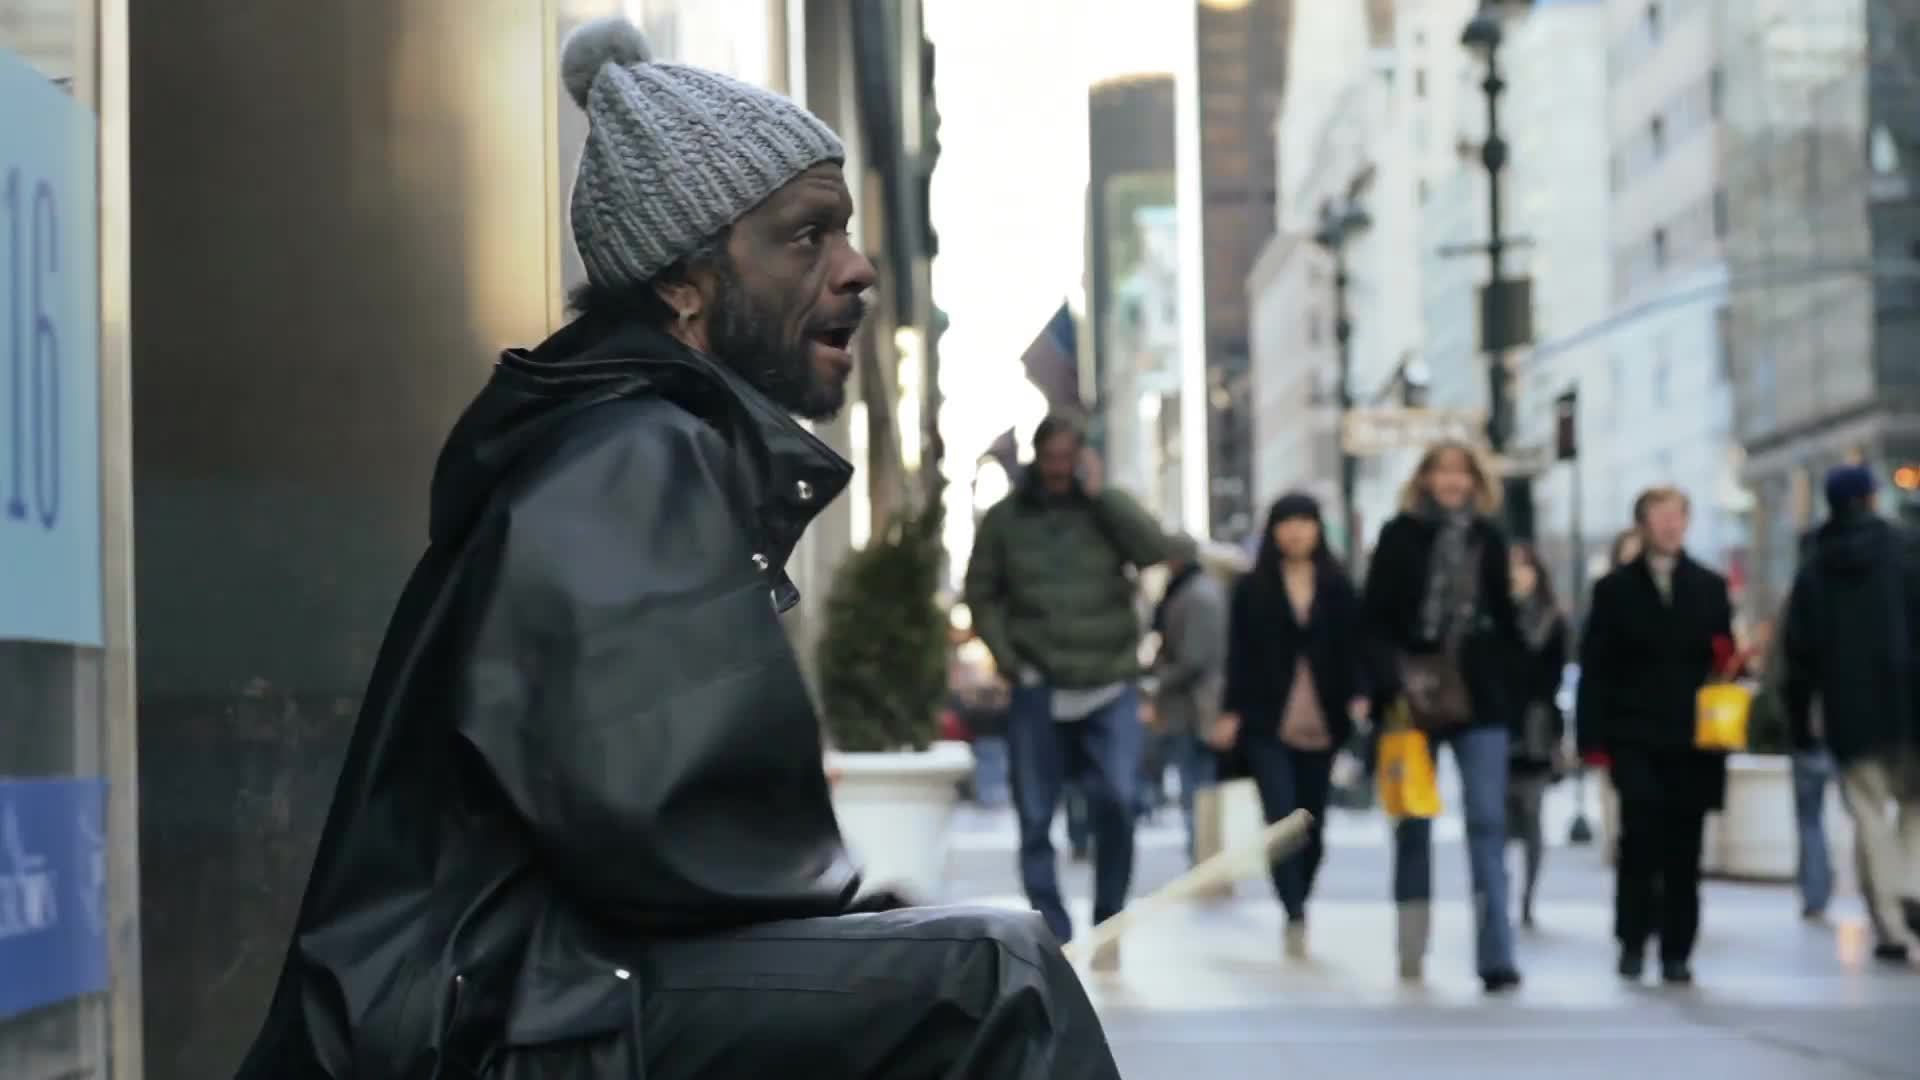 street performer drumming on buckets, drummer on cold winter day Midtown Manhattan